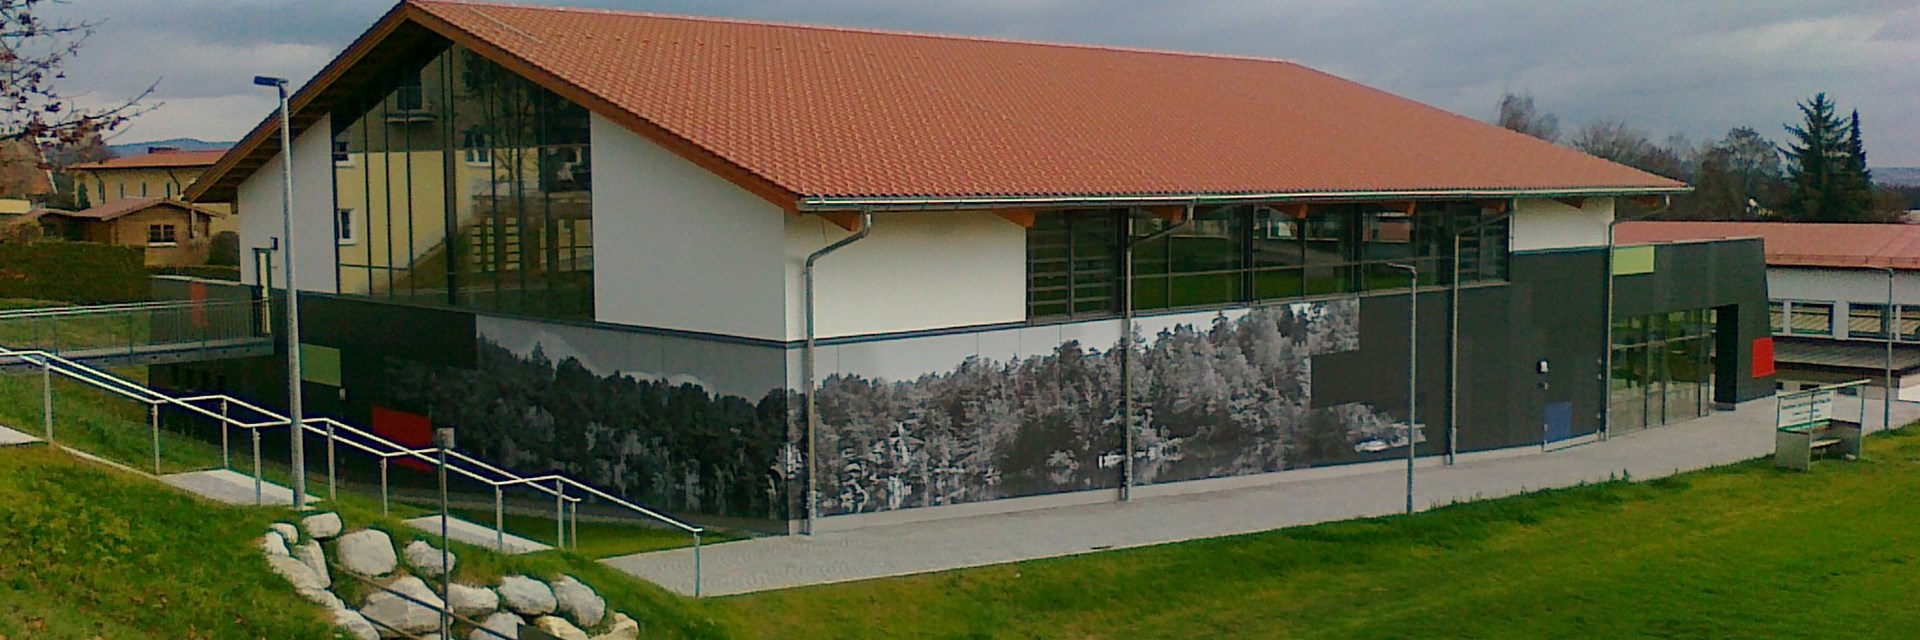 Mehrzweckhalle Büchlberg